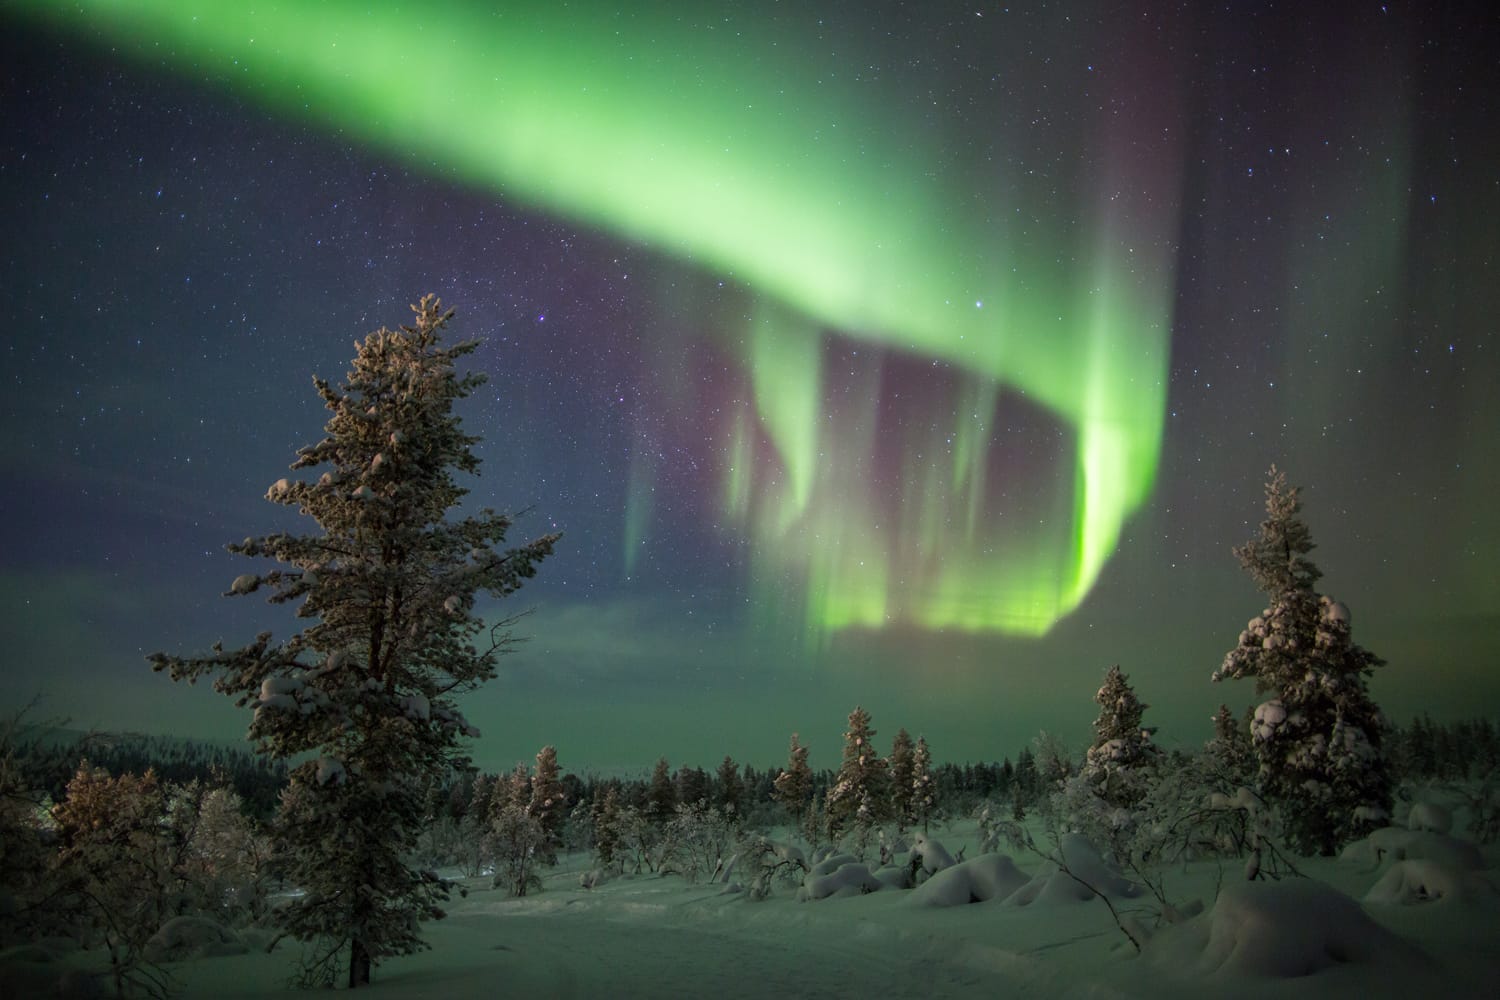 Northern lights (aurora borealis) in Lapland, Finland.